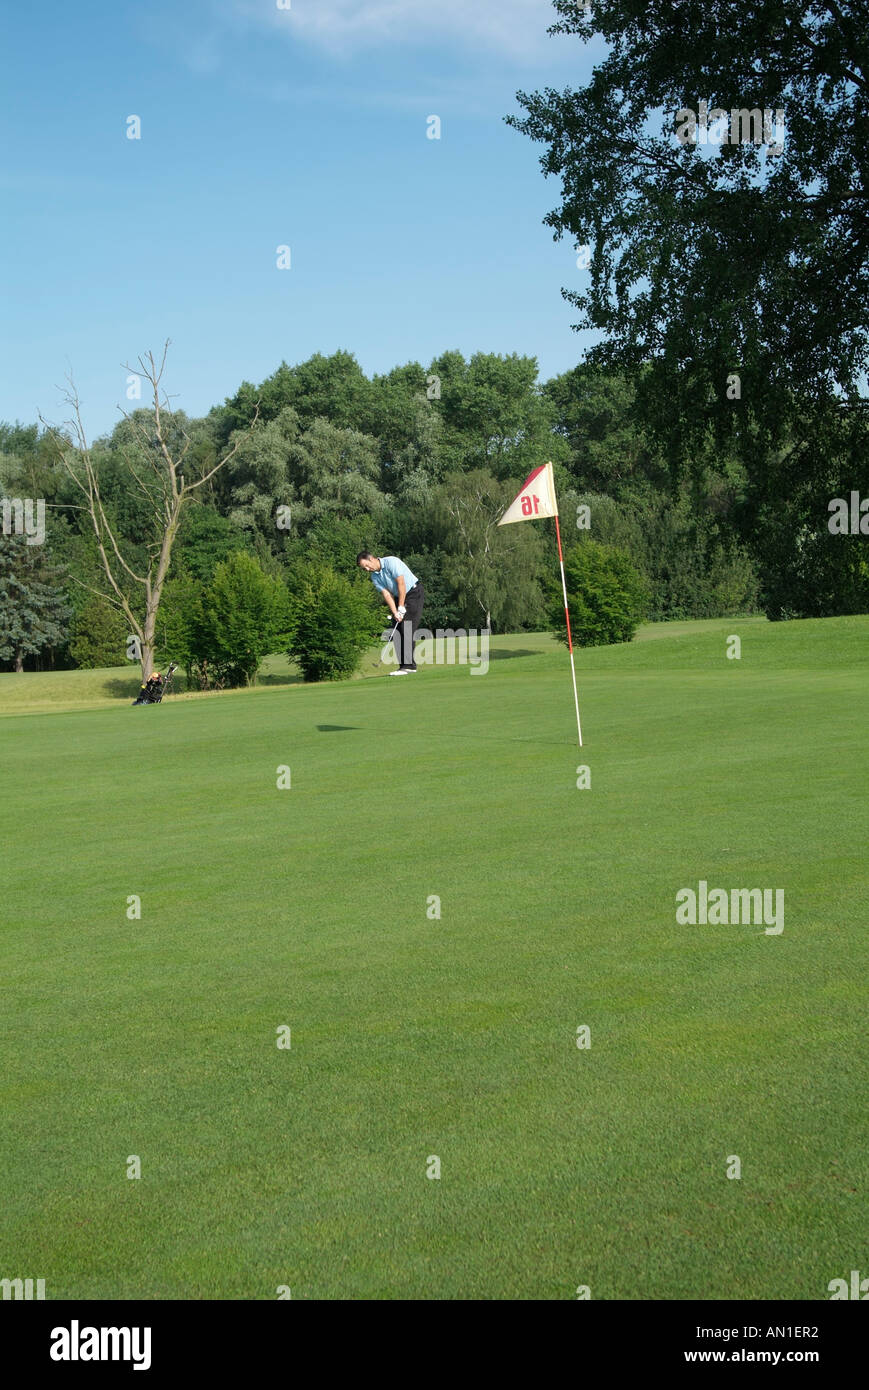 Golf Golfing Golfsport, golfer hitting a golf ball on golf course Stock Photo